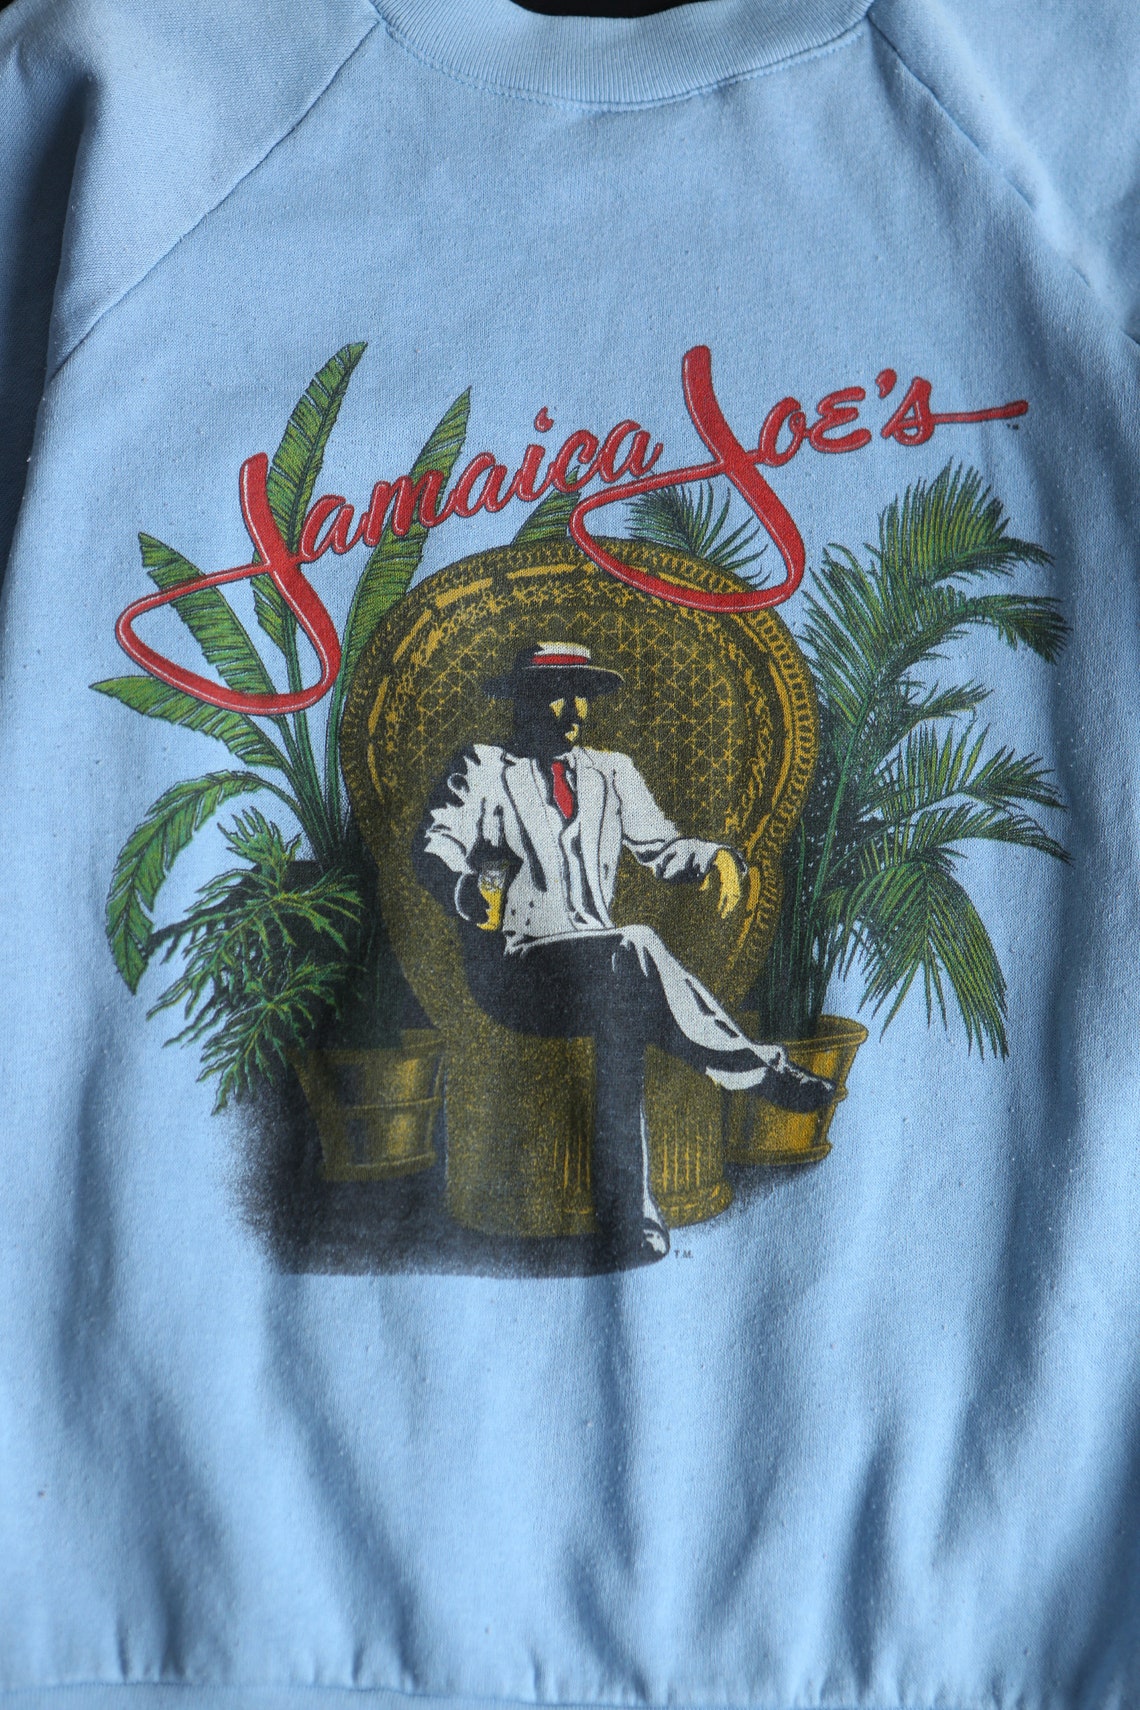 Vintage Sweatshirt / Jamaica Joe's Print / Blue | Etsy